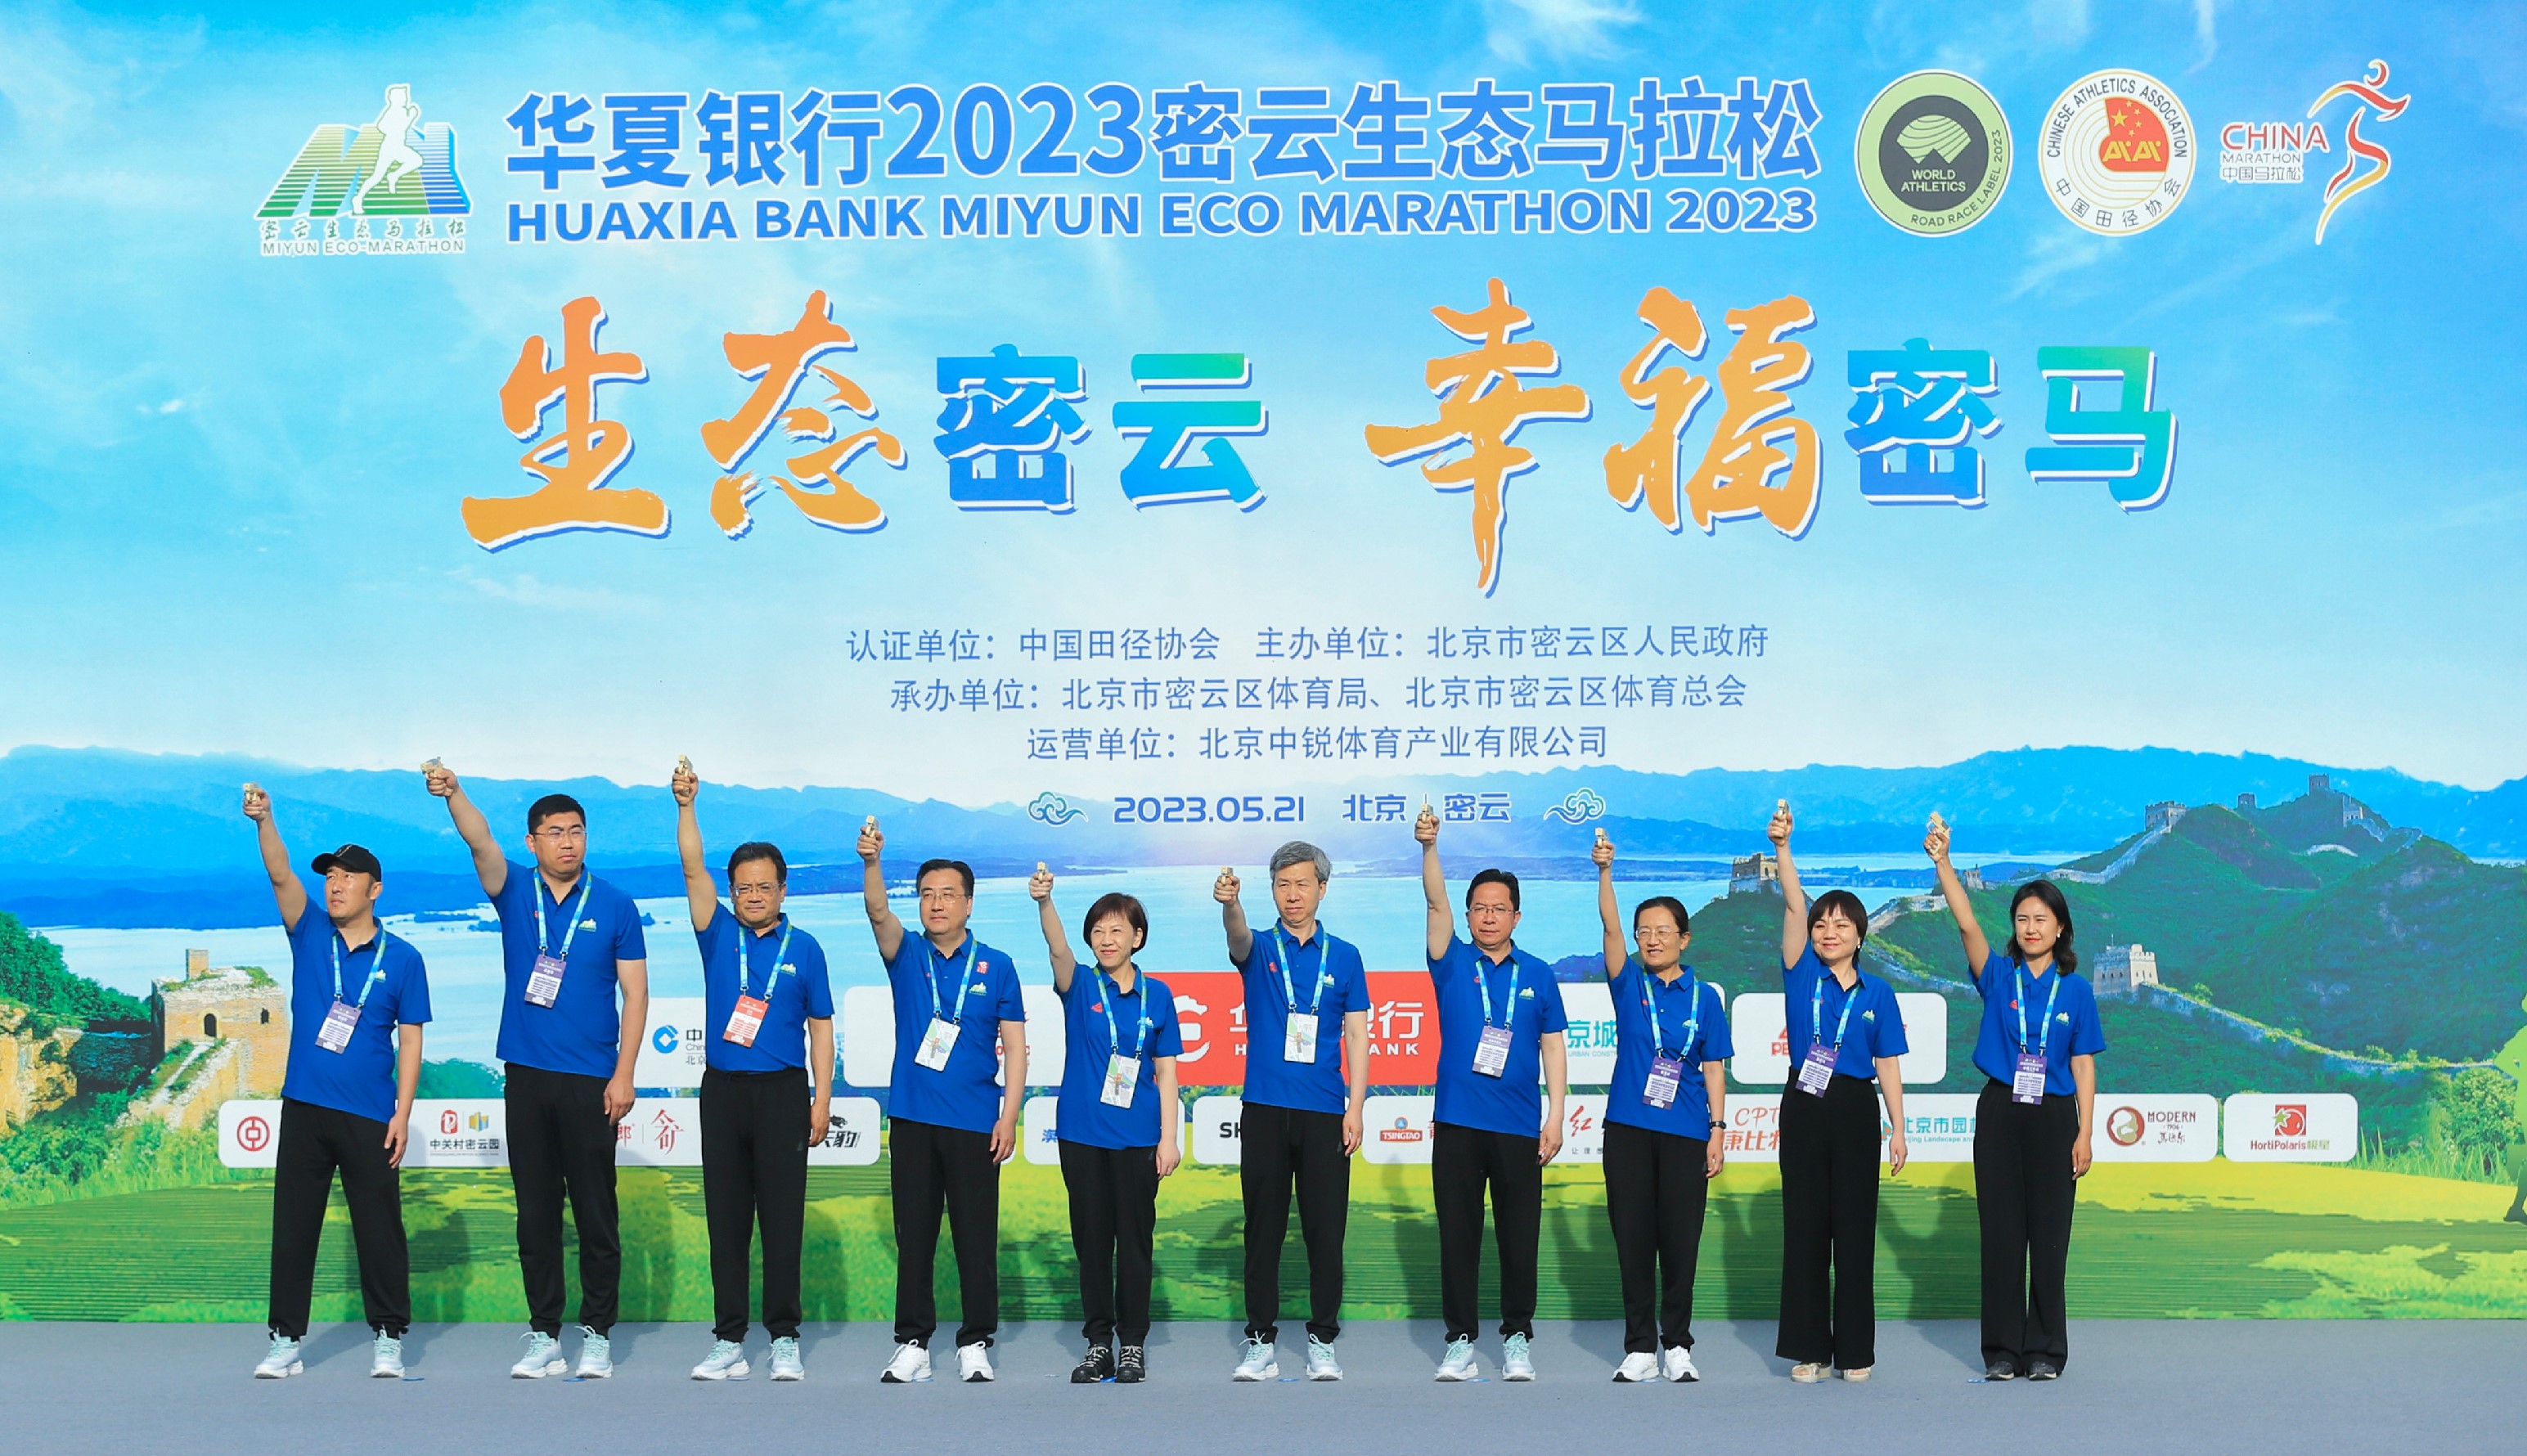 守护绿水青山，奔赴美好未来 ——华夏银行2023密云生态马拉松开跑